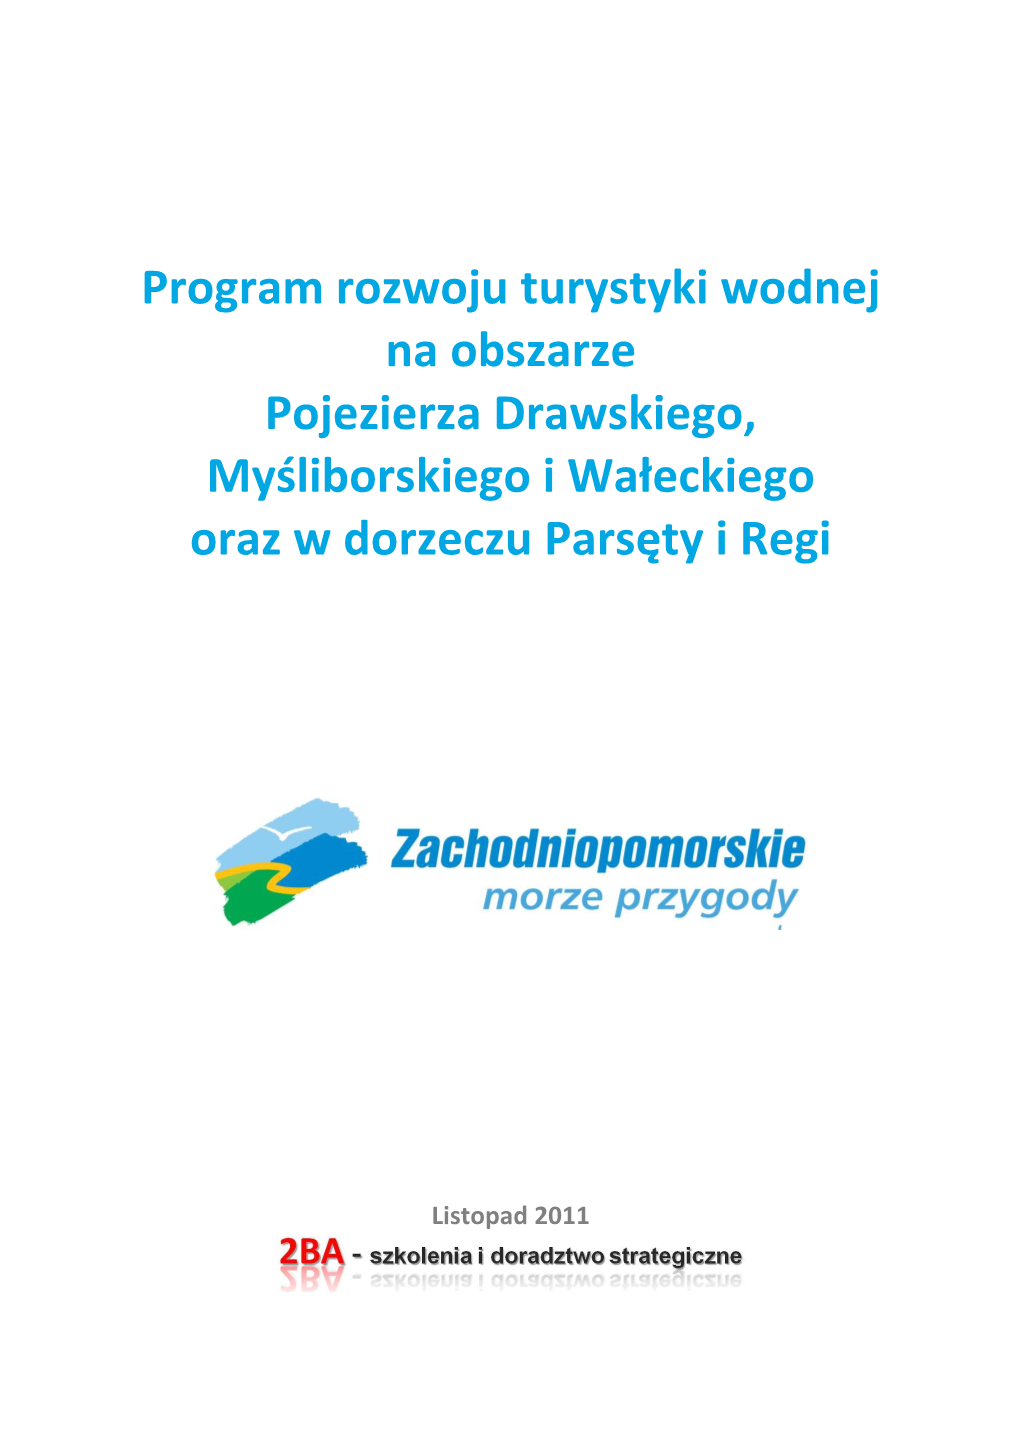 Program Rozwoju Turystyki Wodnej Na Obszarze Pojezierza Drawskiego, Myśliborskiego I Wałeckiego